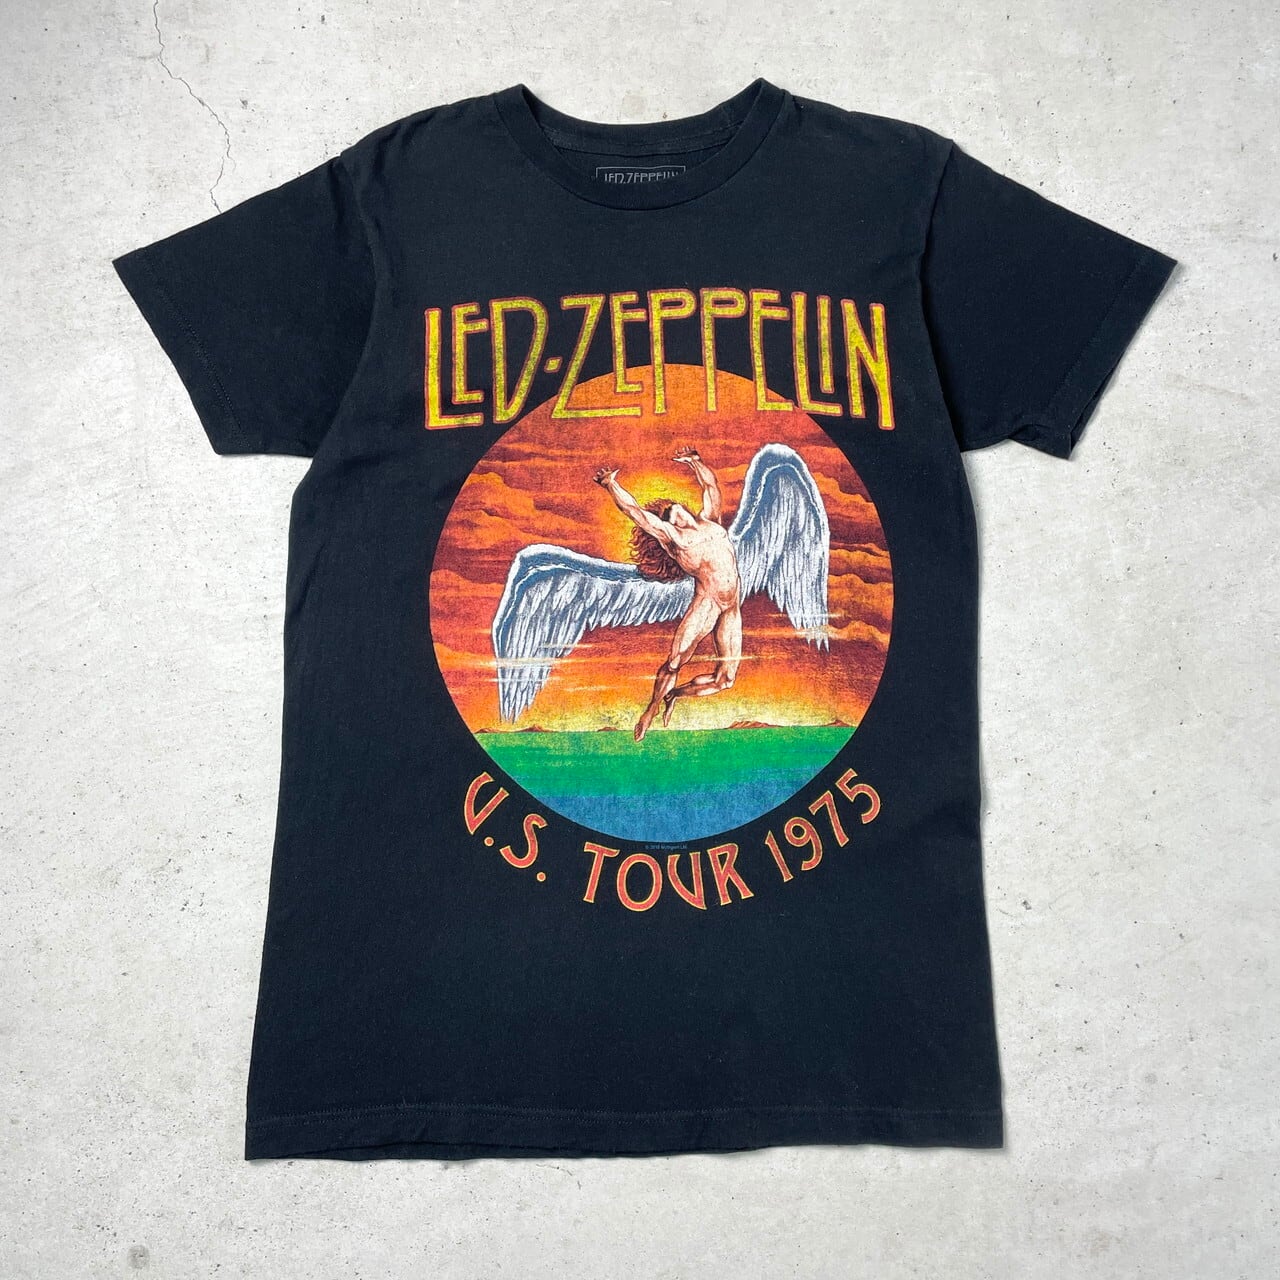 00年代 LED ZEPPELIN レッドツェッペリン U.S.TOUR 1975 リプリント